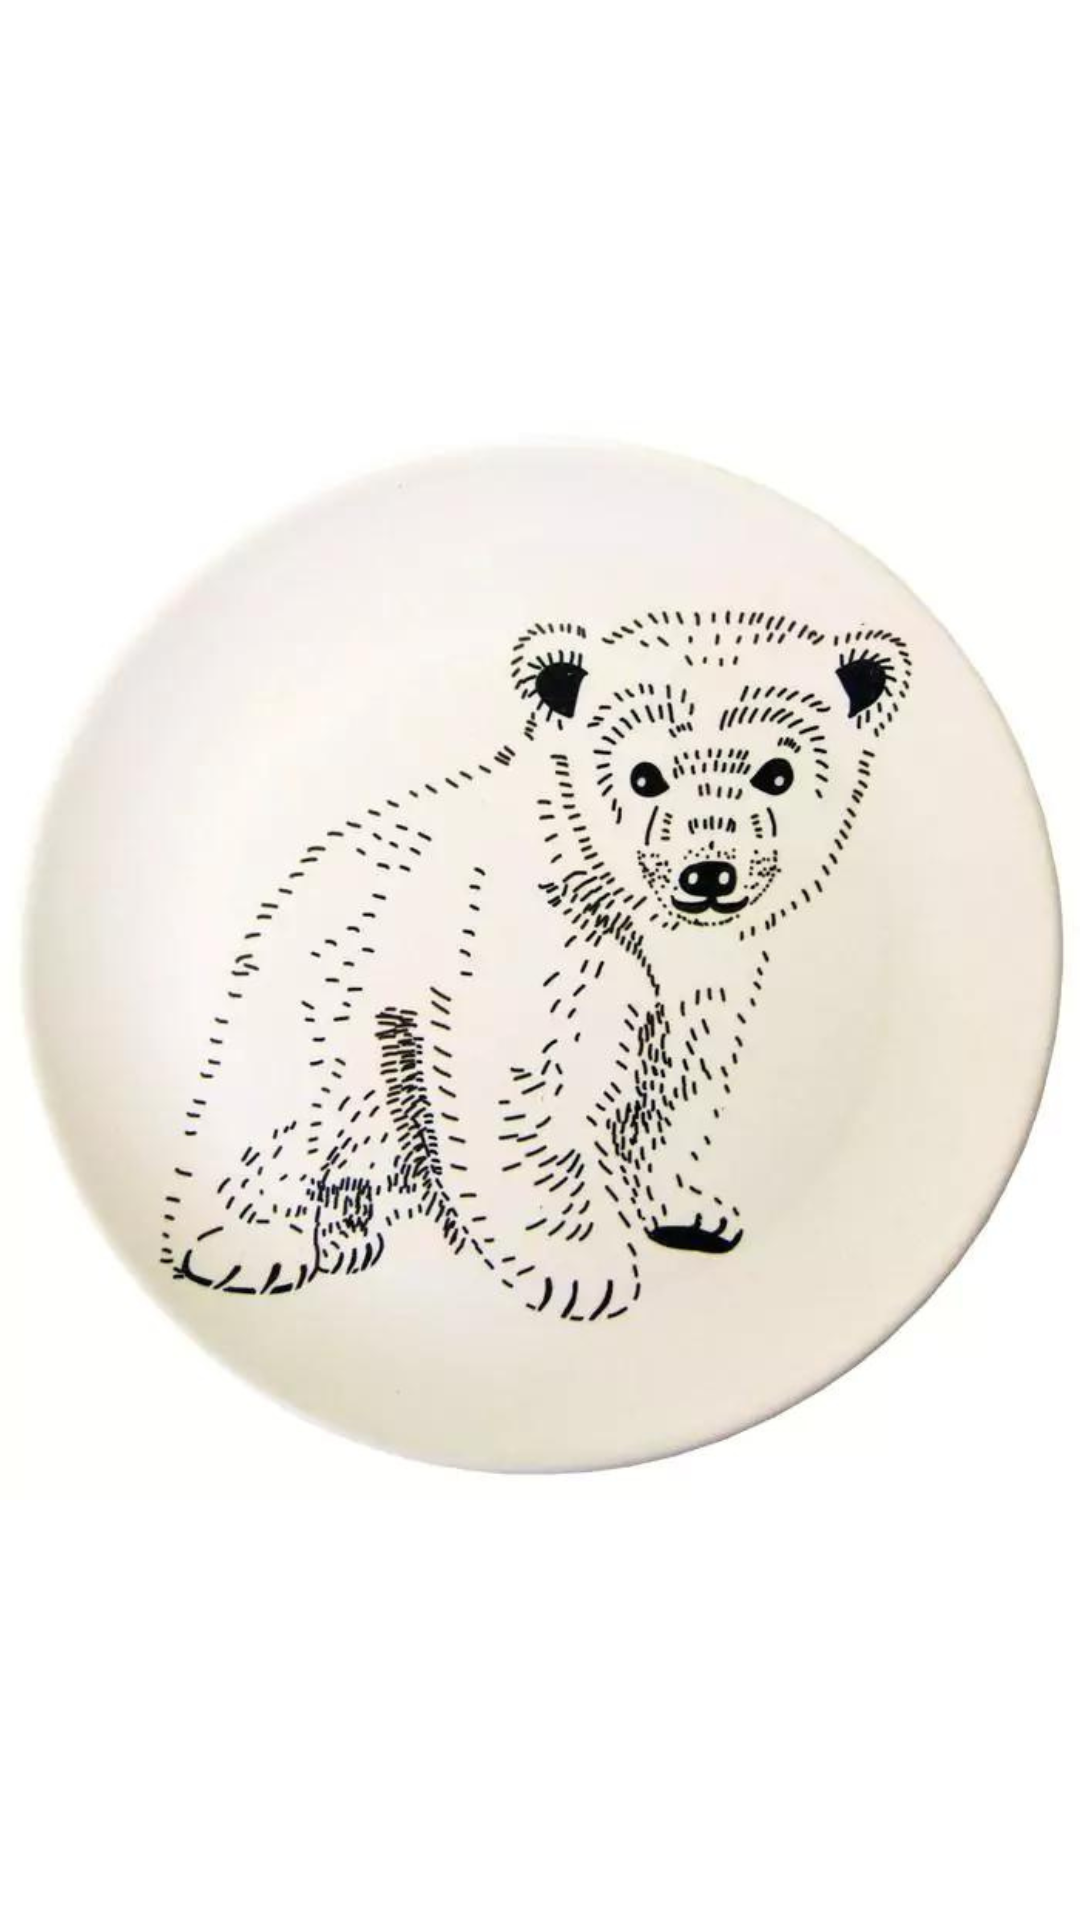 Plate standing bear